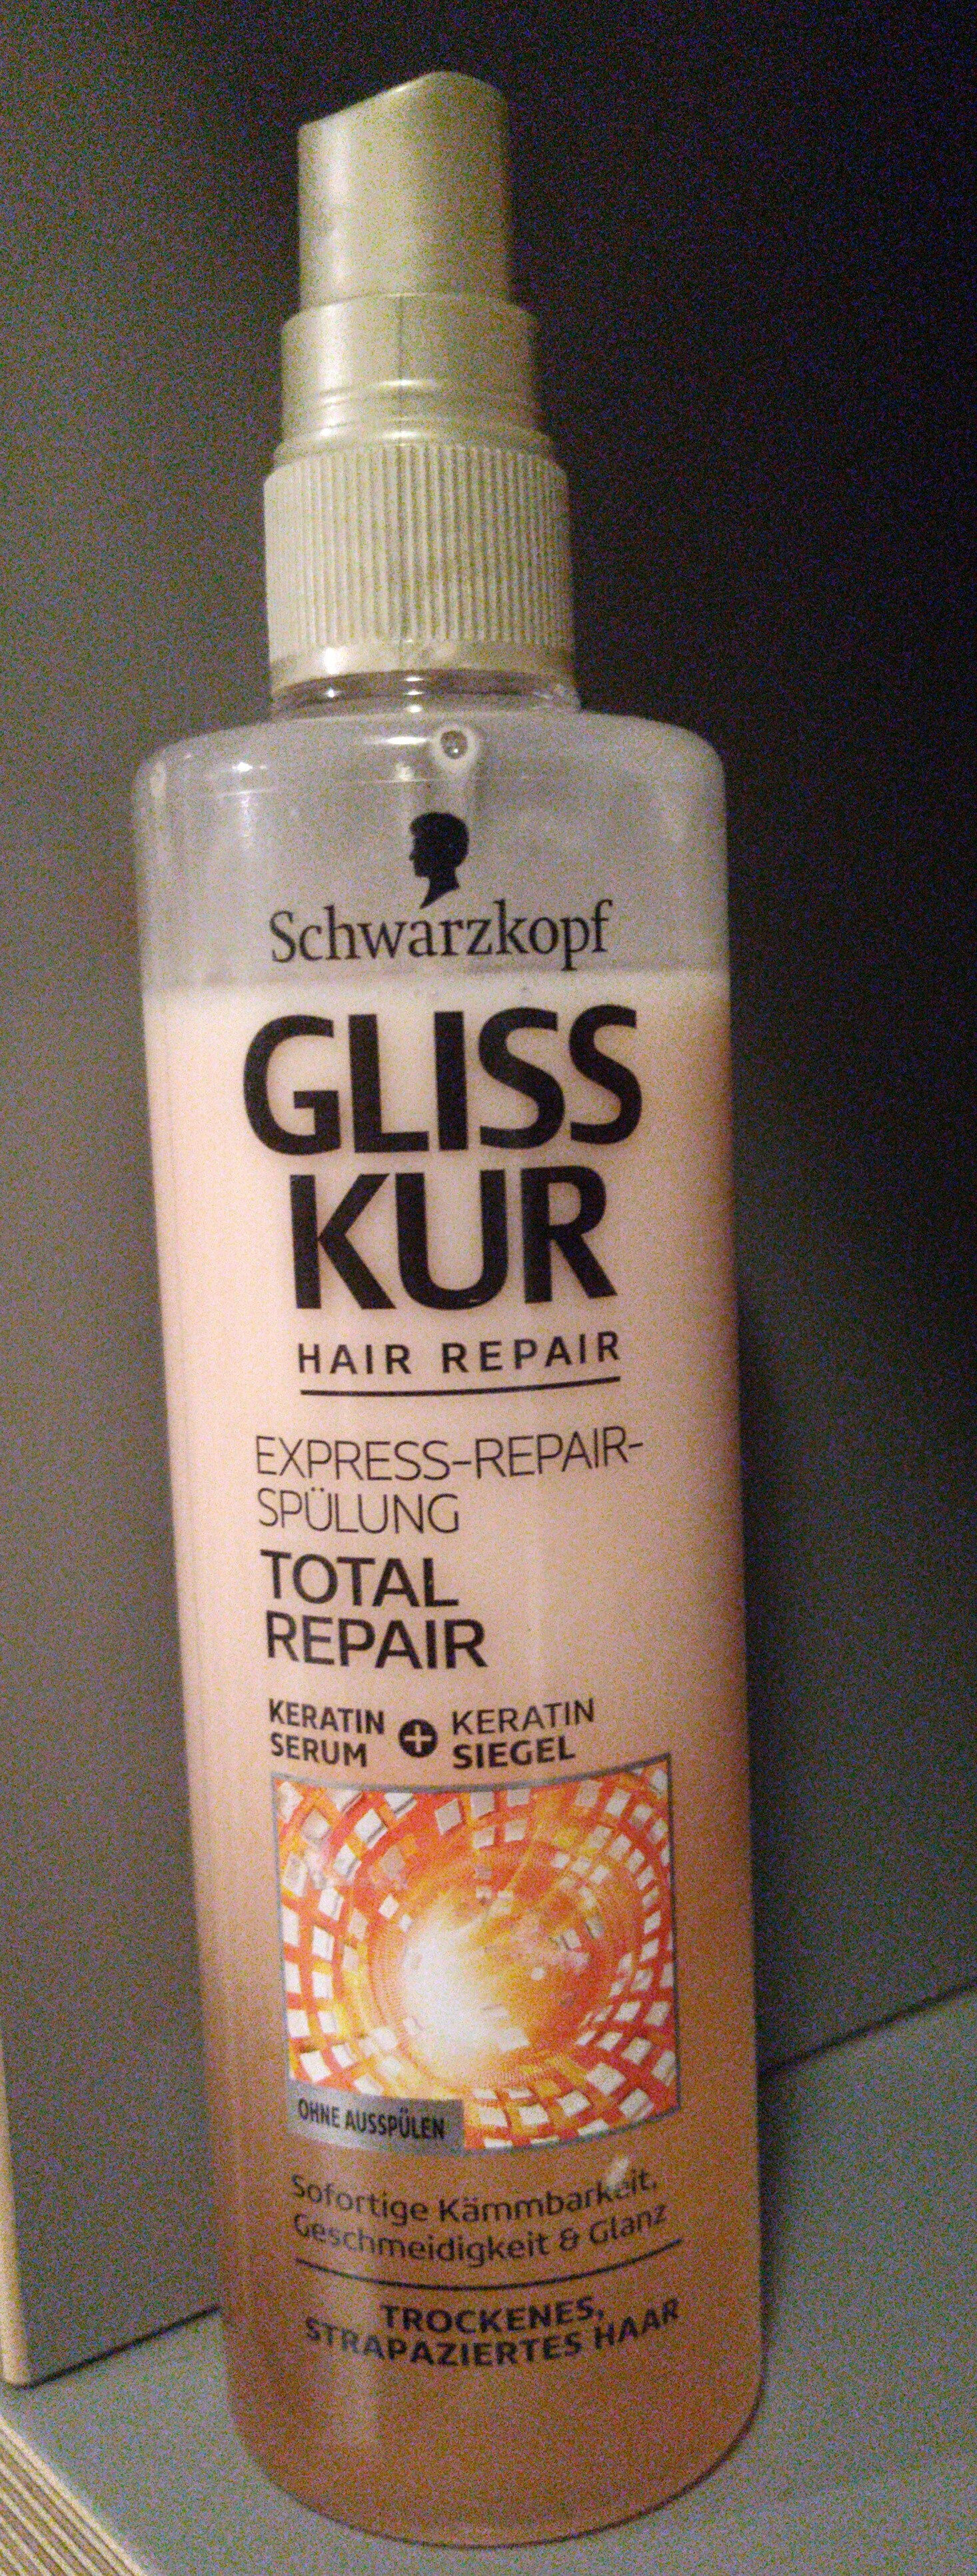 GLISS KUR Total Repair - Schwarzkopf 200 ml